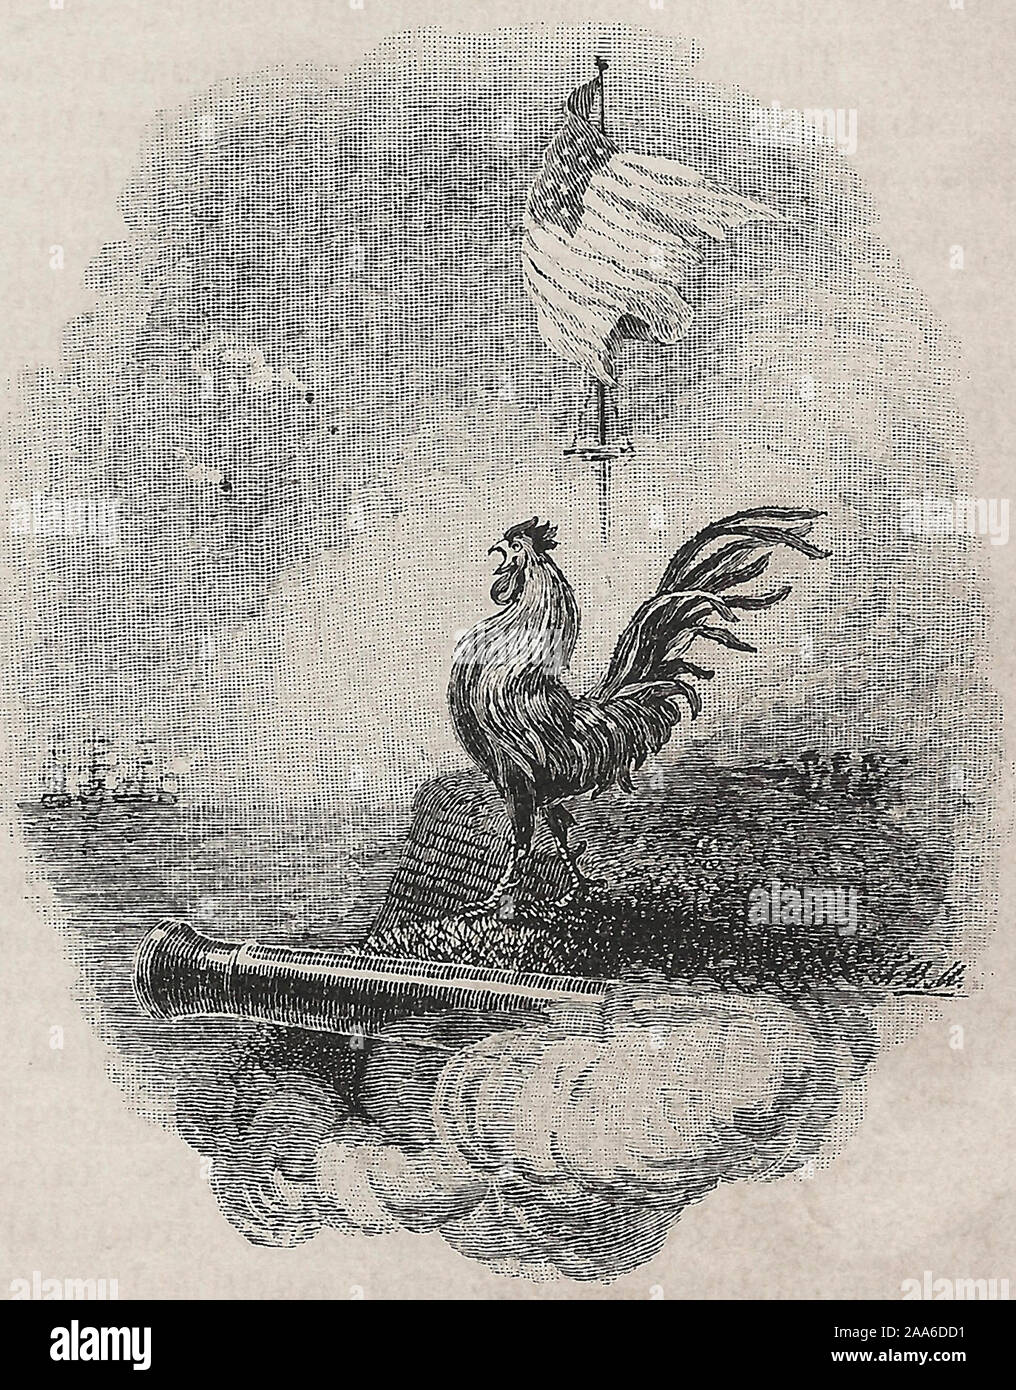 Coq debout sur un canon de Fort McHenry durant la guerre de 1812 - Le drapeau ondulant encore à l'aube de la lumière. Banque D'Images